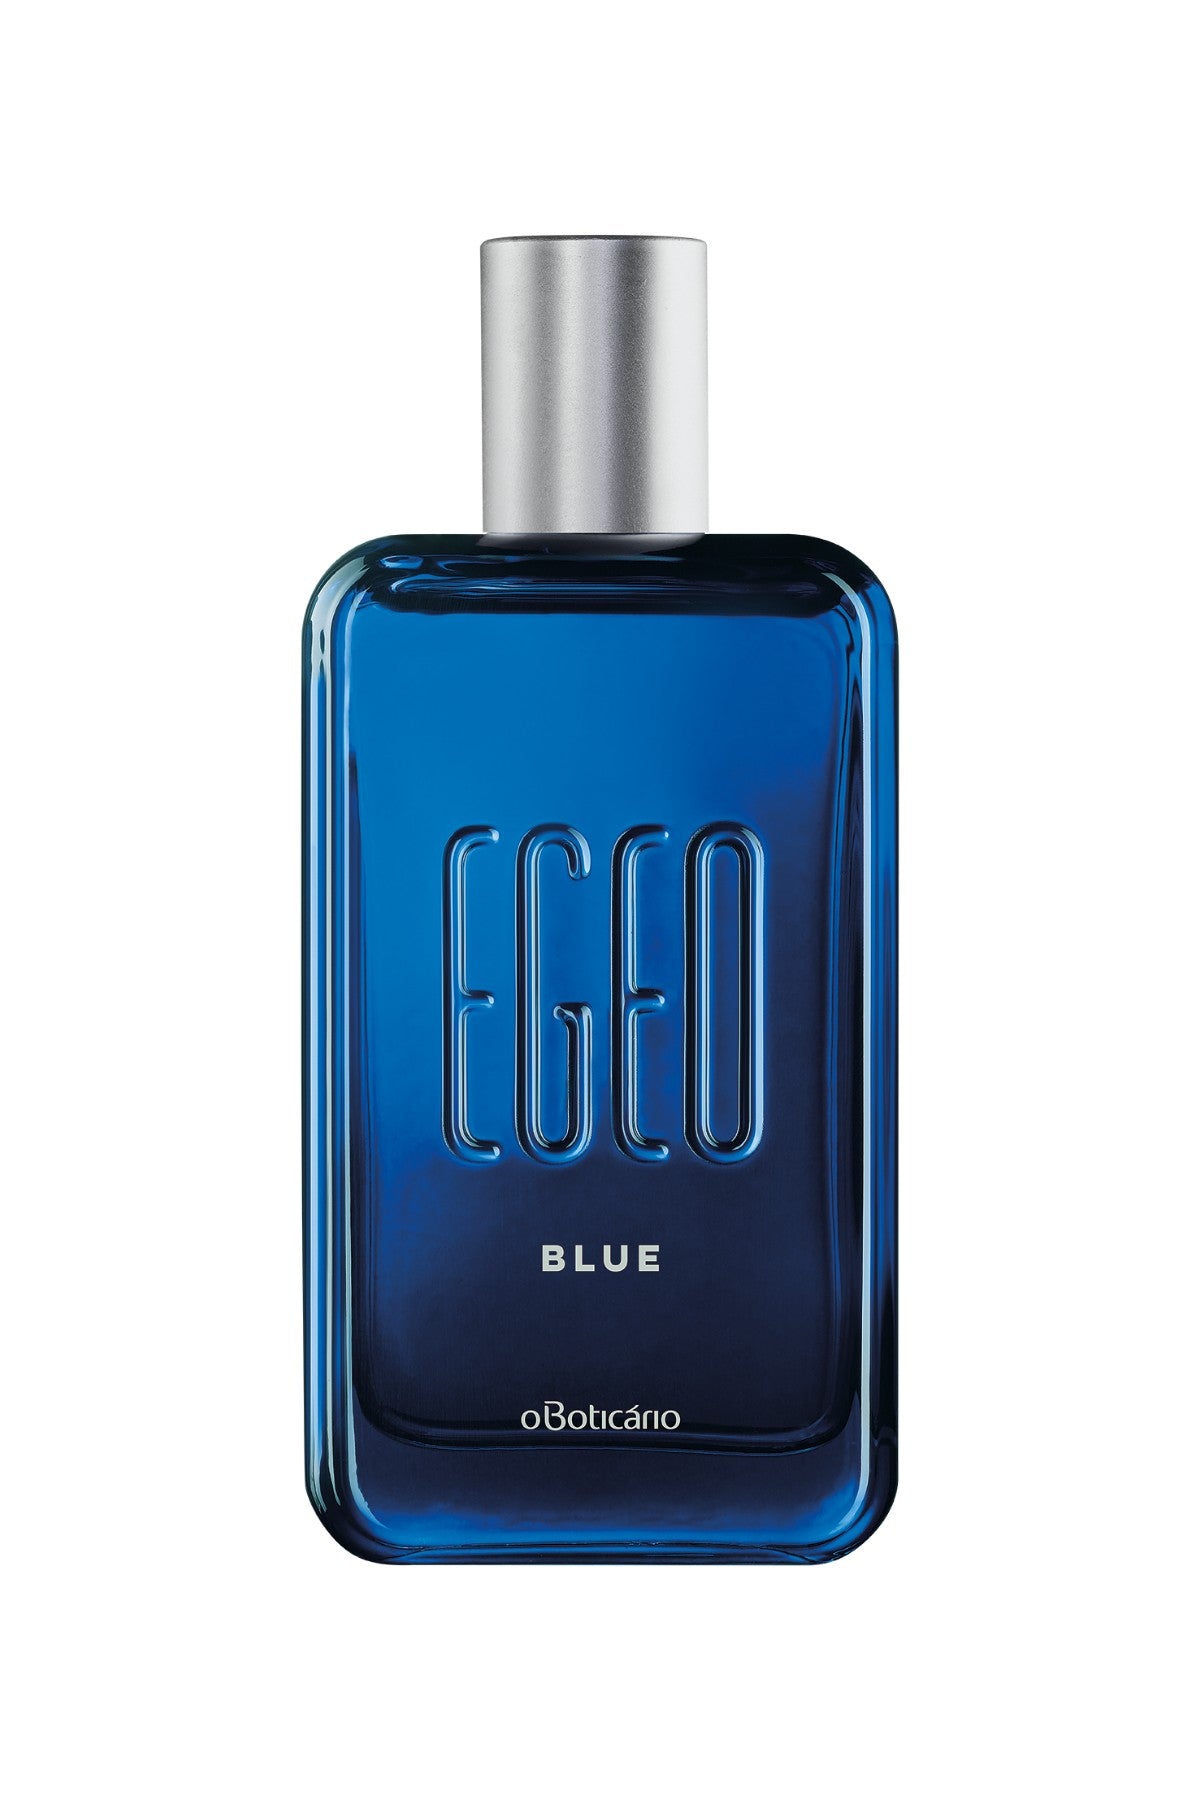 Egeo Blue Cologne for Men